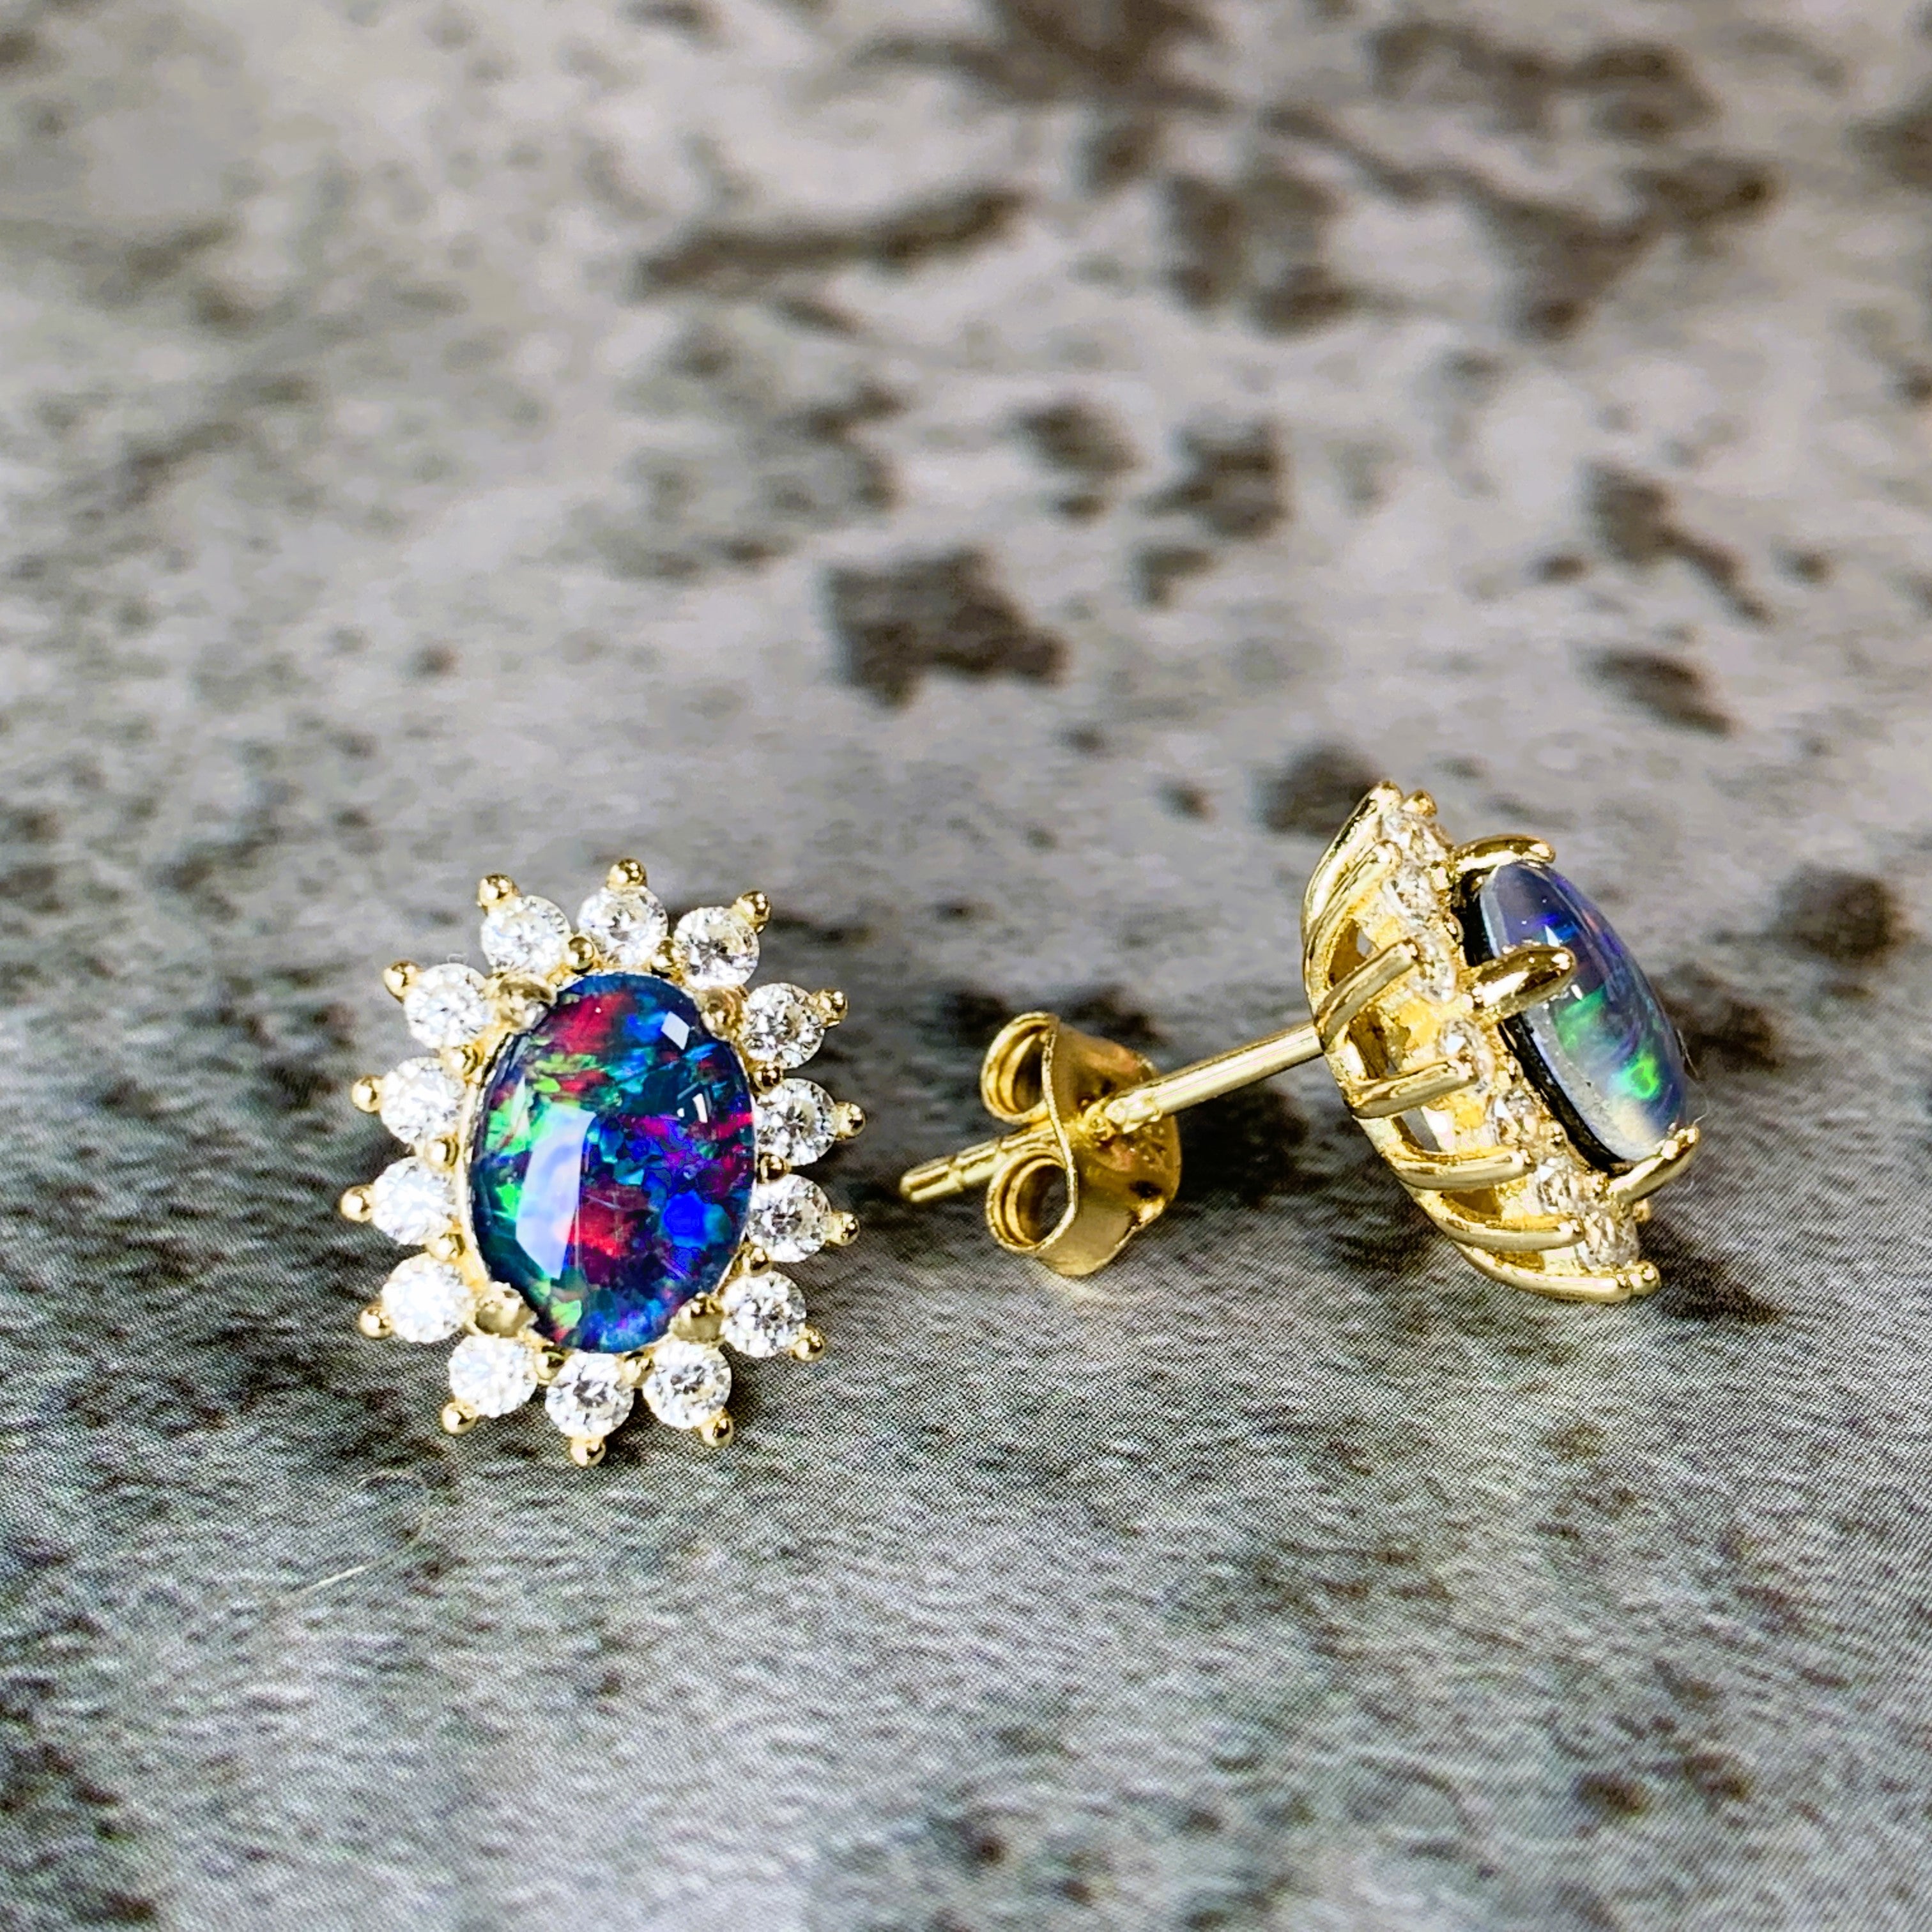 Yellow Gold plated silver 8x6mm Opal triplet cluster earrings - Masterpiece Jewellery Opal & Gems Sydney Australia | Online Shop